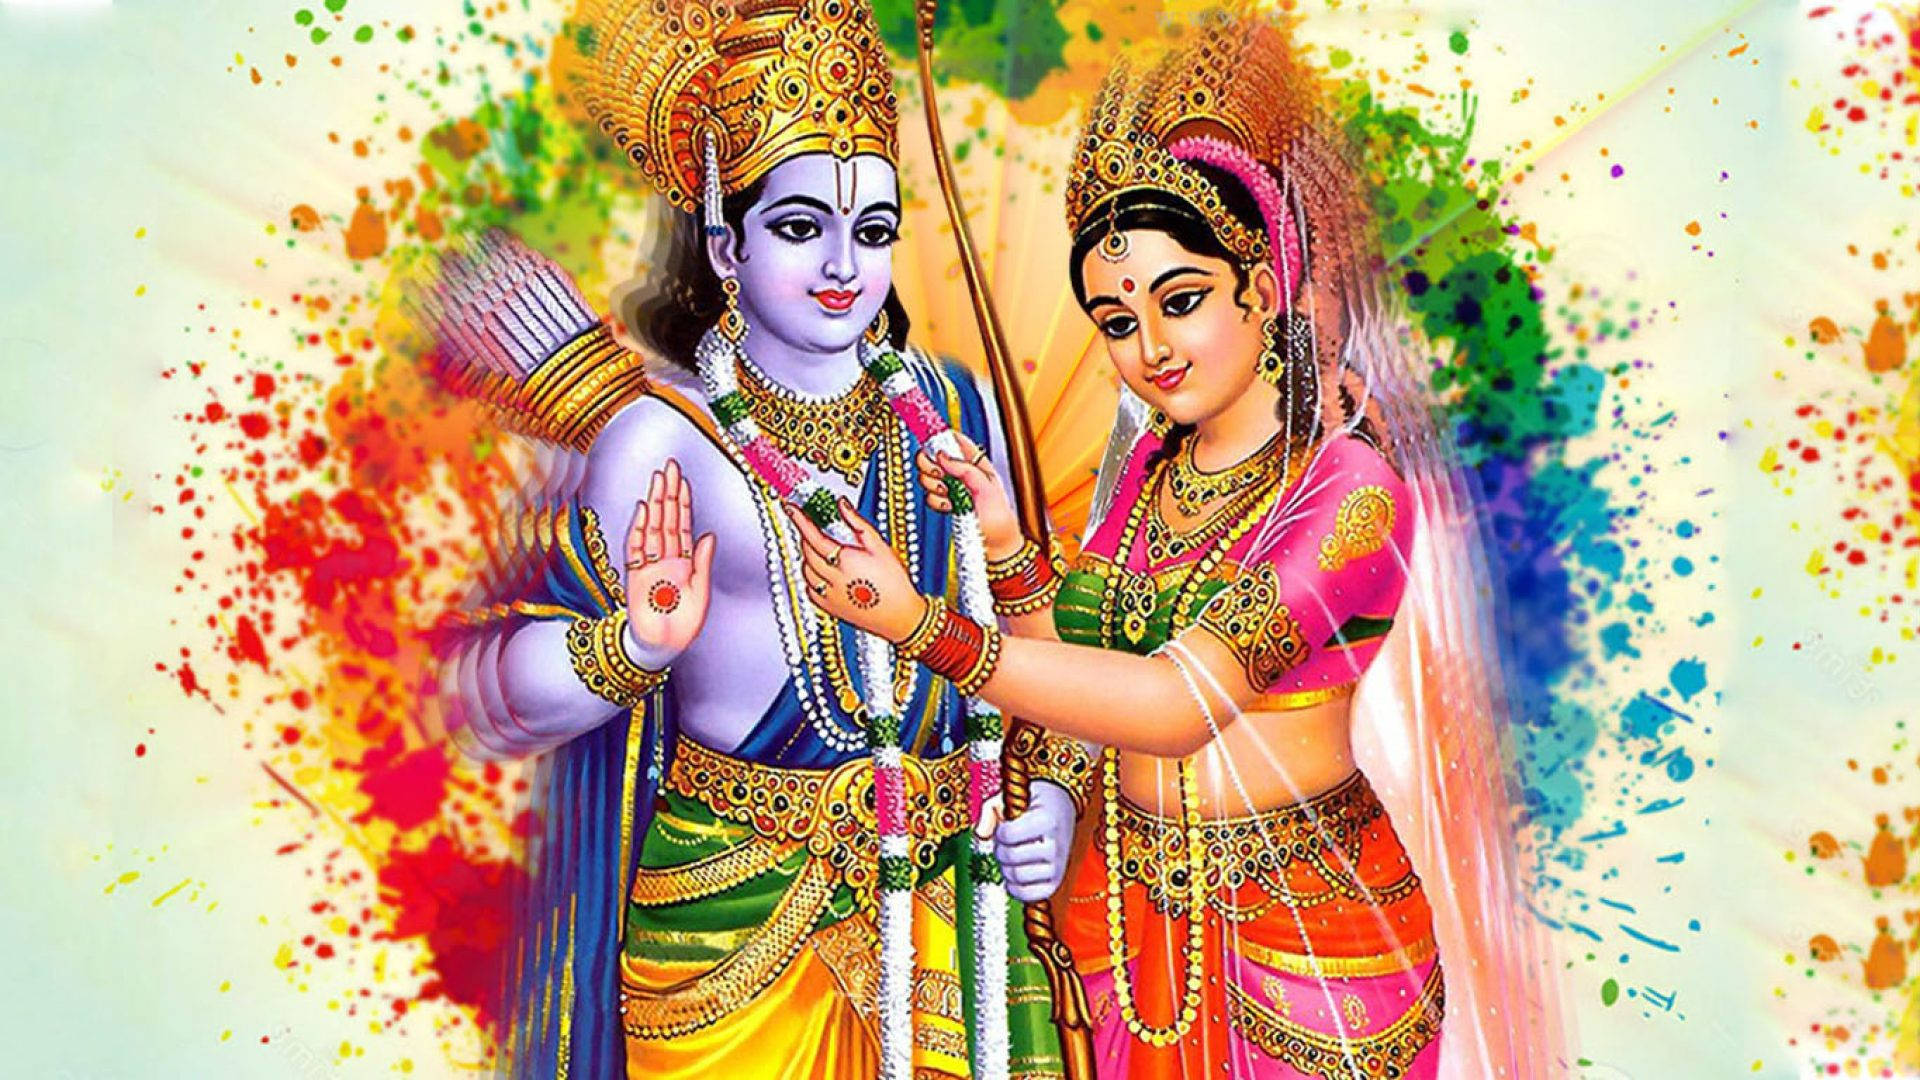 Free Ram Sita Wallpaper Downloads, [100+] Ram Sita Wallpapers for FREE |  